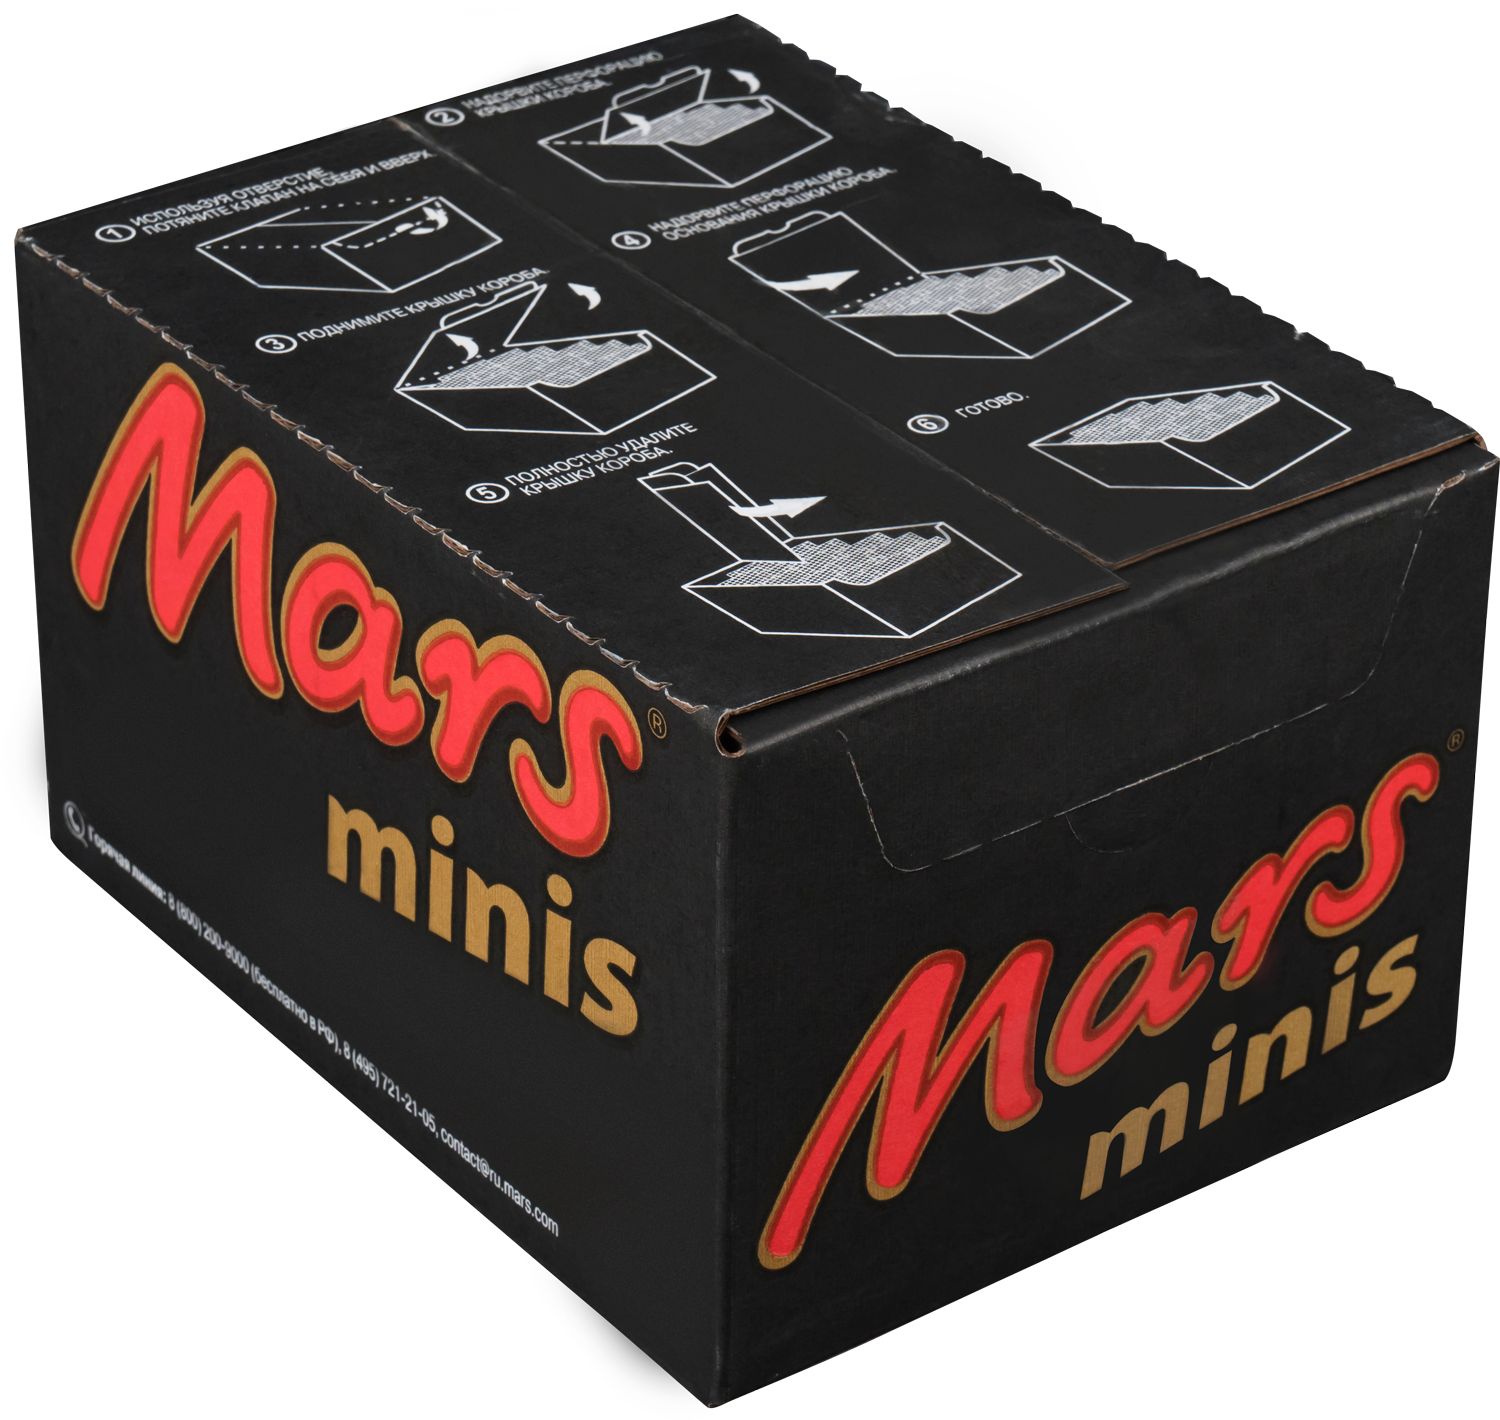 Развесные конфеты Mars Minis, Карамель, Коробка, 2.7кг.